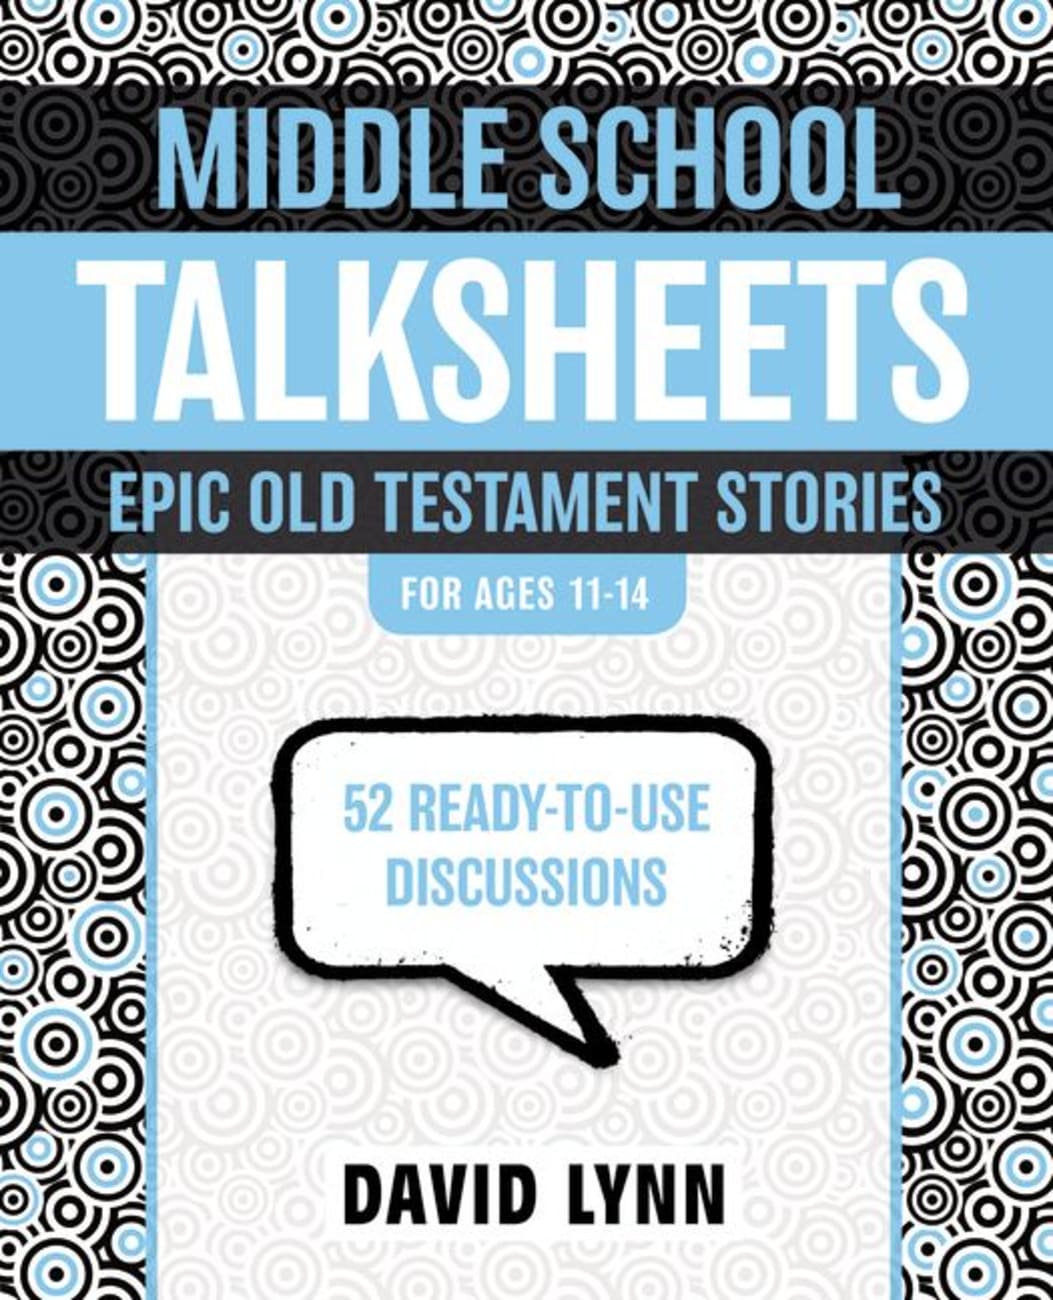 Middleschool Talksheets: Epic Old Testament Stories Paperback